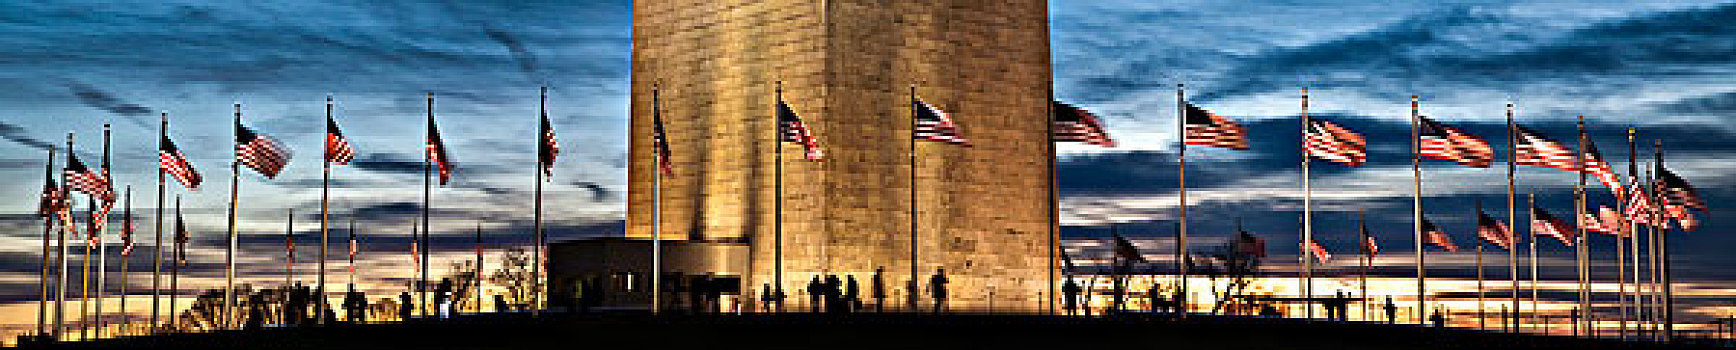 美国国旗,华盛顿纪念碑,华盛顿特区,美国